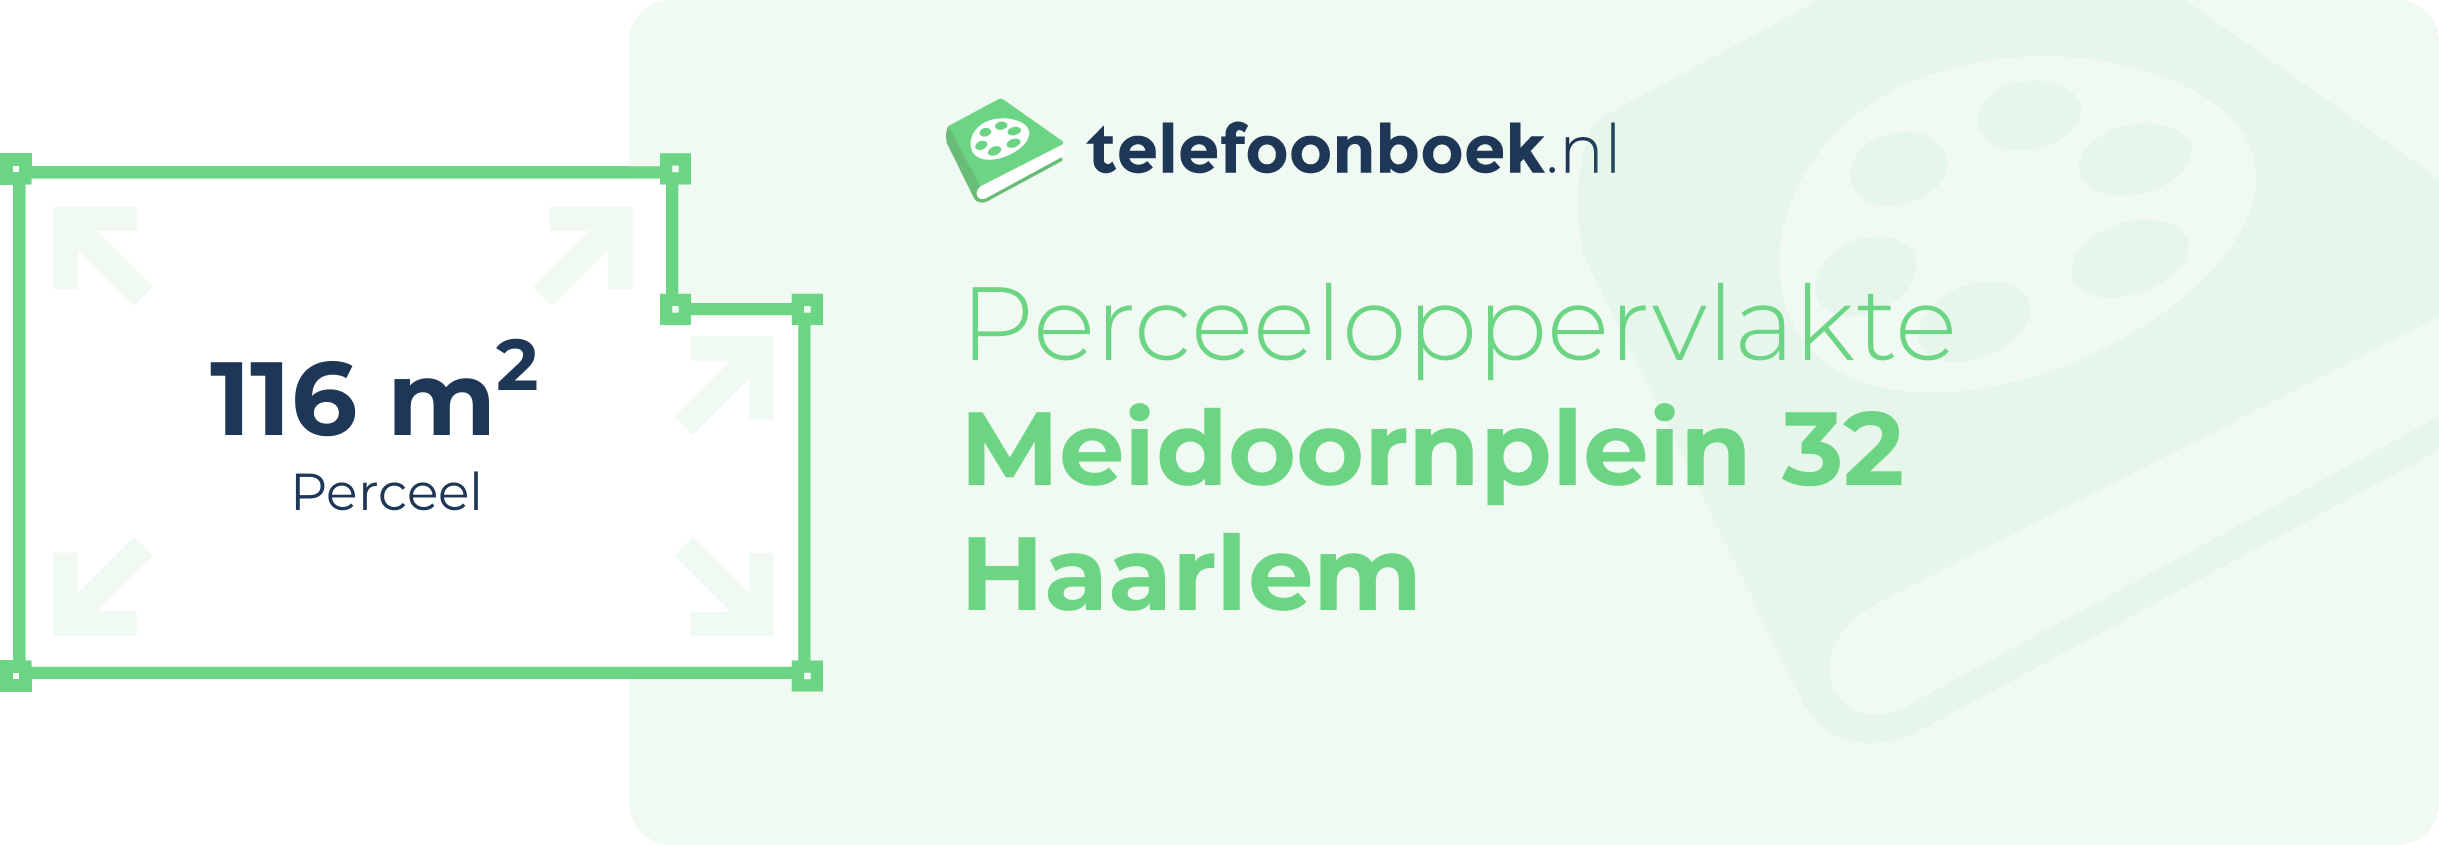 Perceeloppervlakte Meidoornplein 32 Haarlem